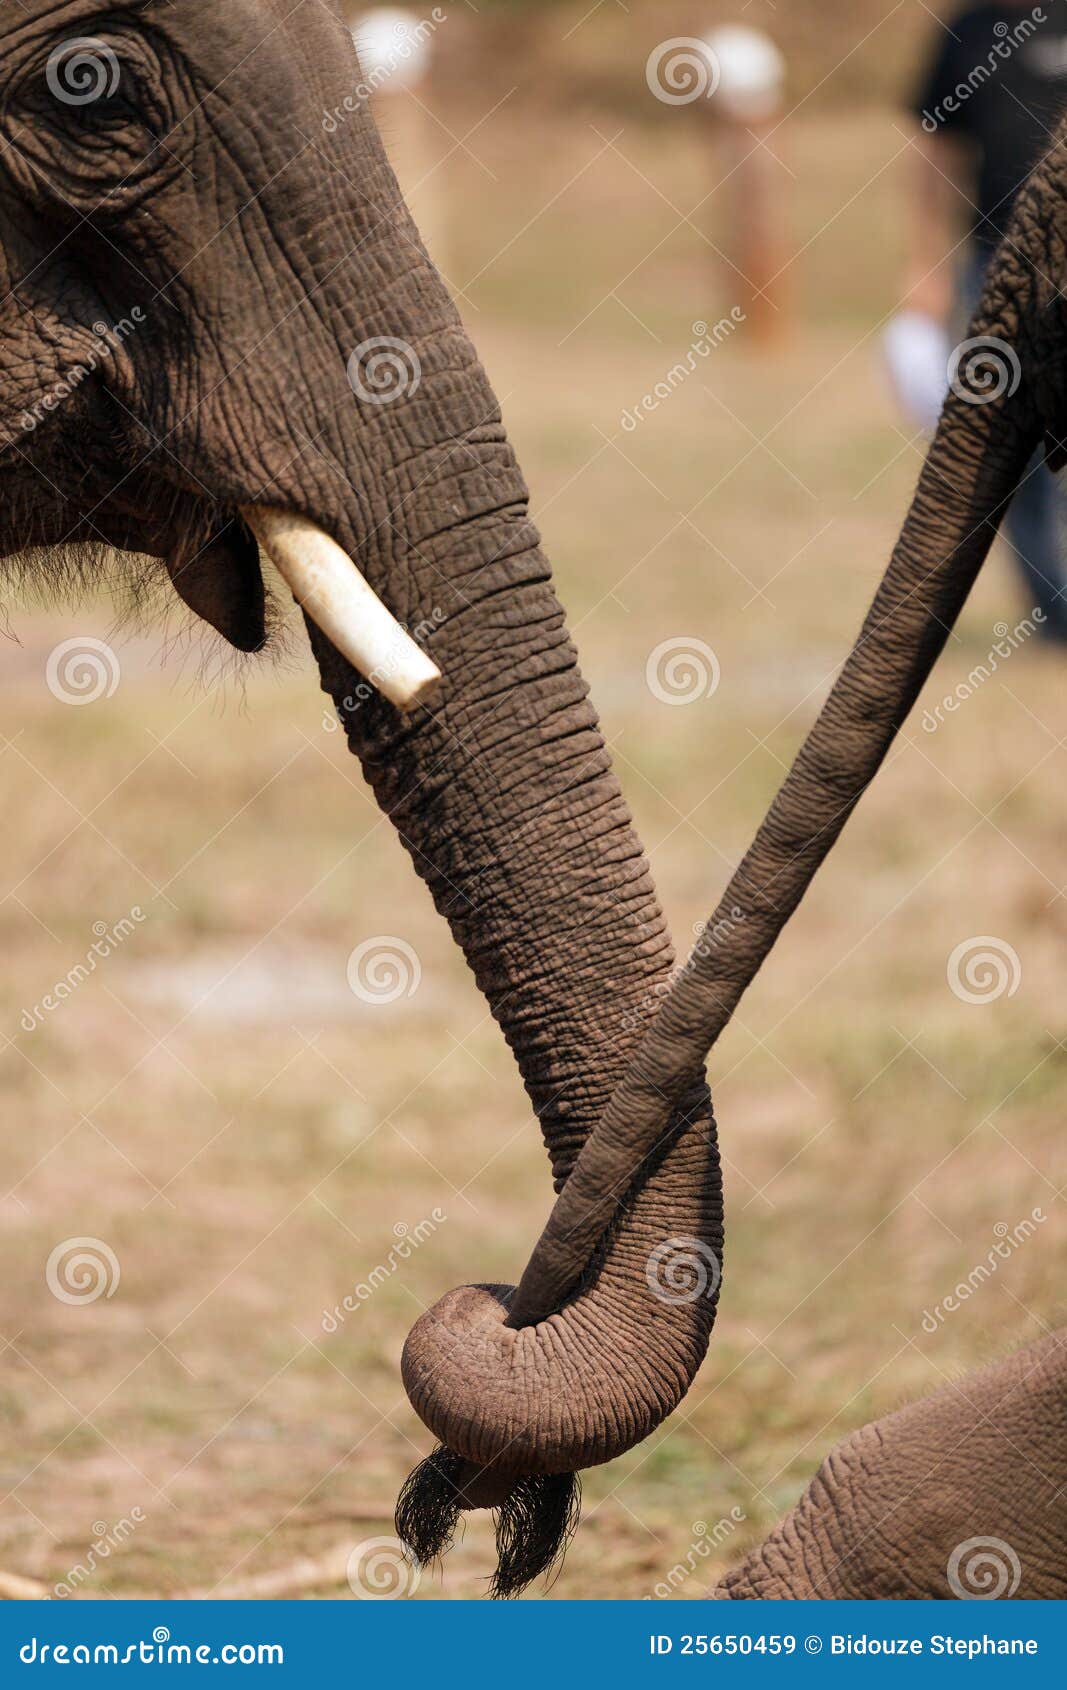 Elephant Couple Royalty Free Stock Images - Image: 25650459